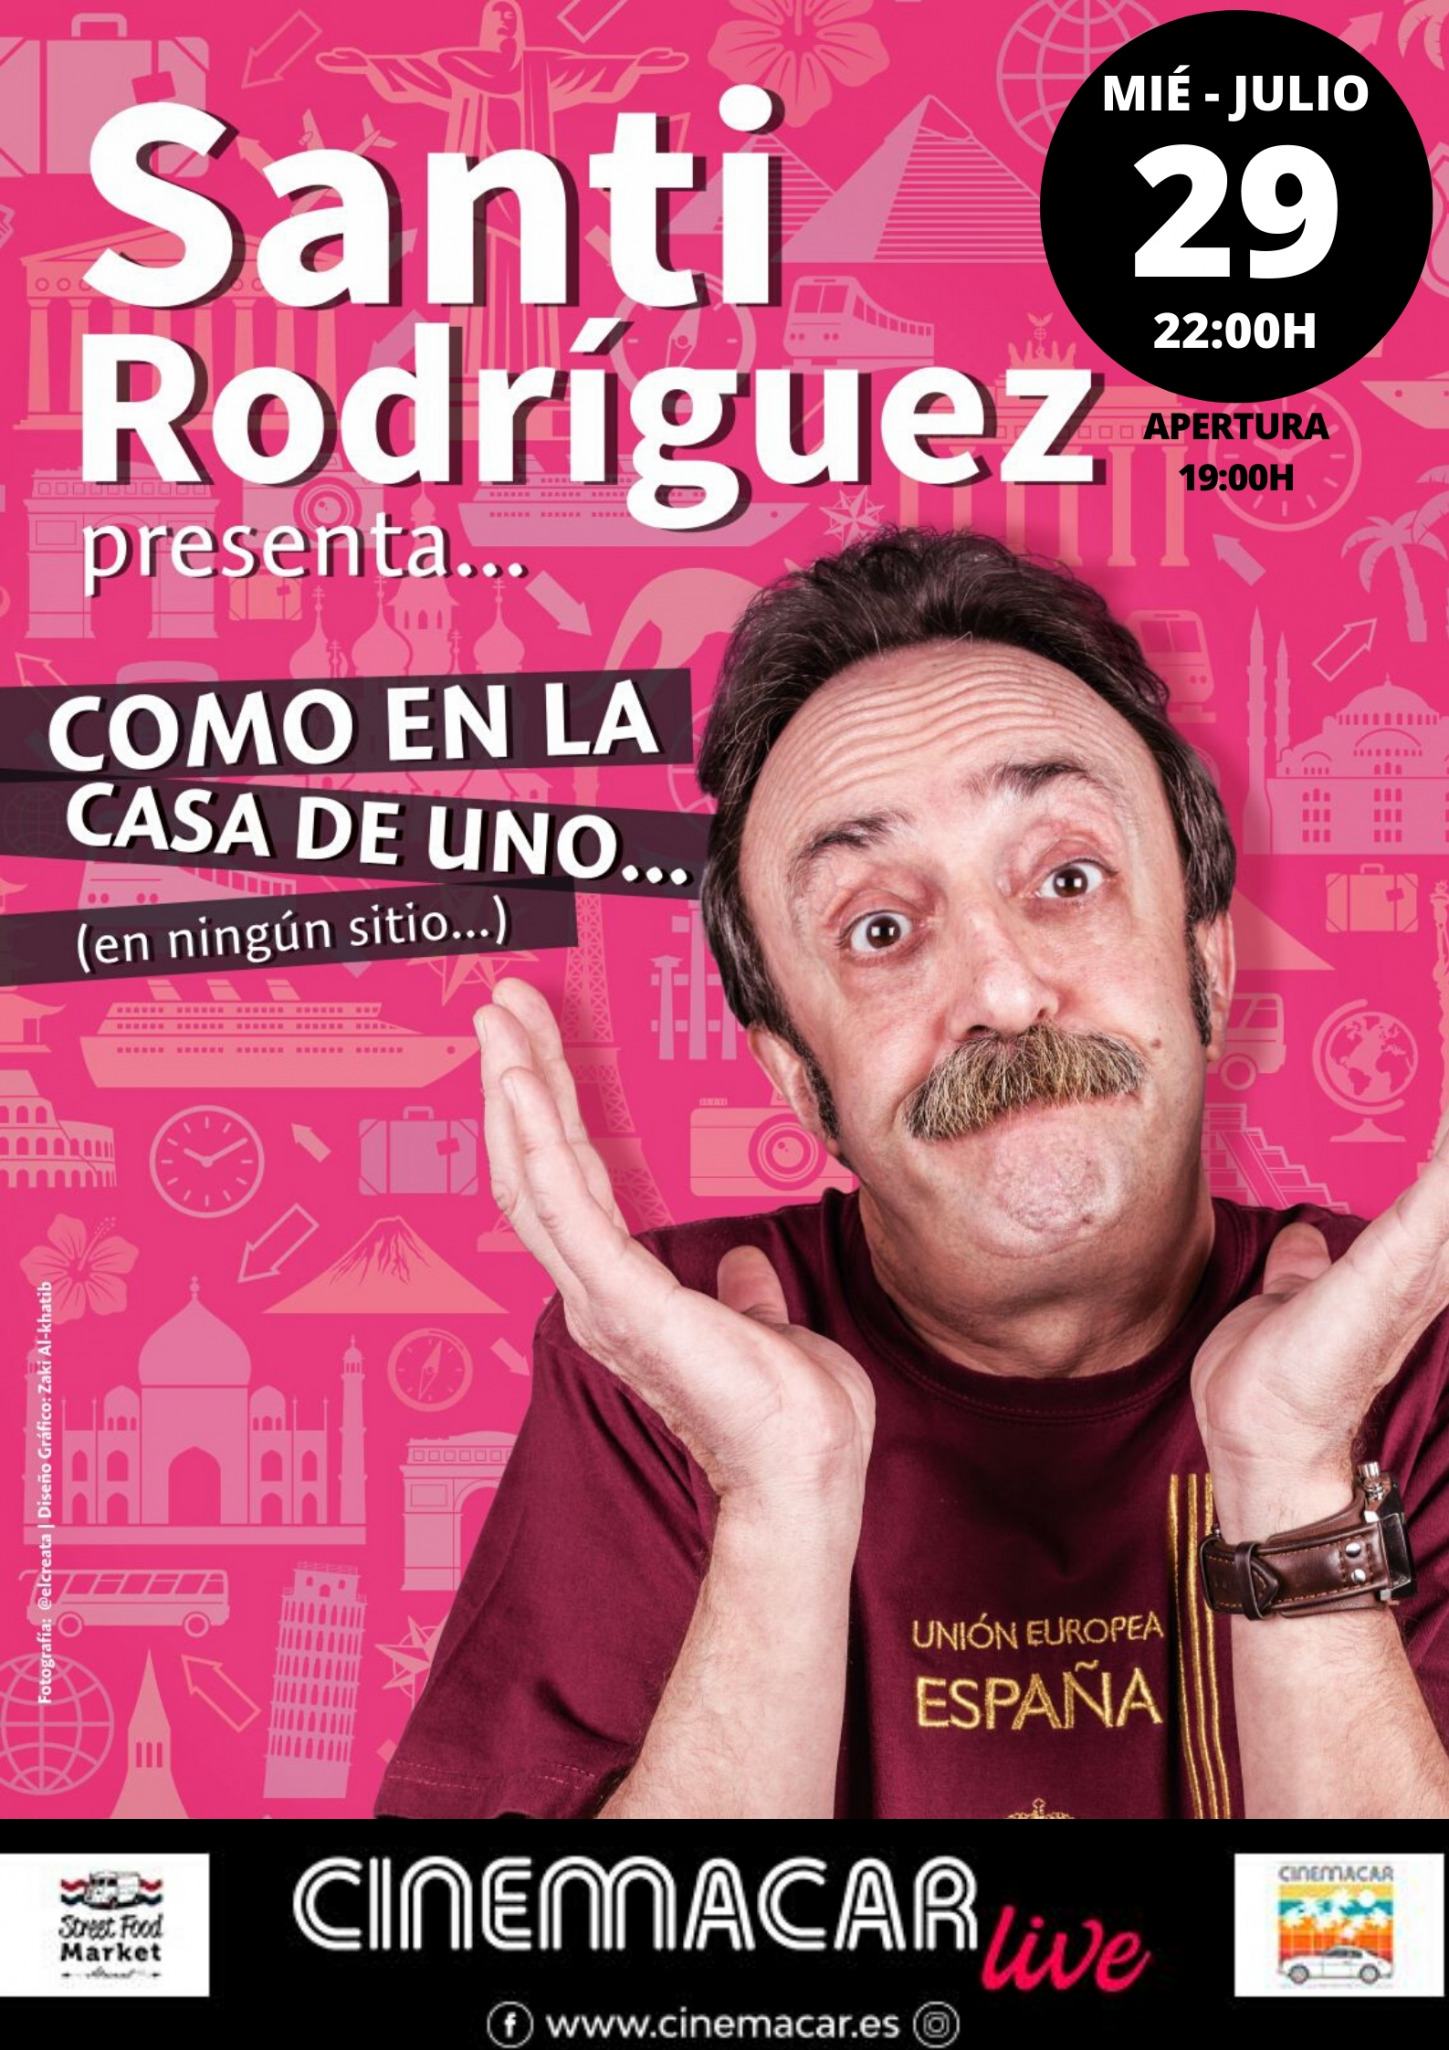 Santi Rodríguez en Cinemacar Alicante